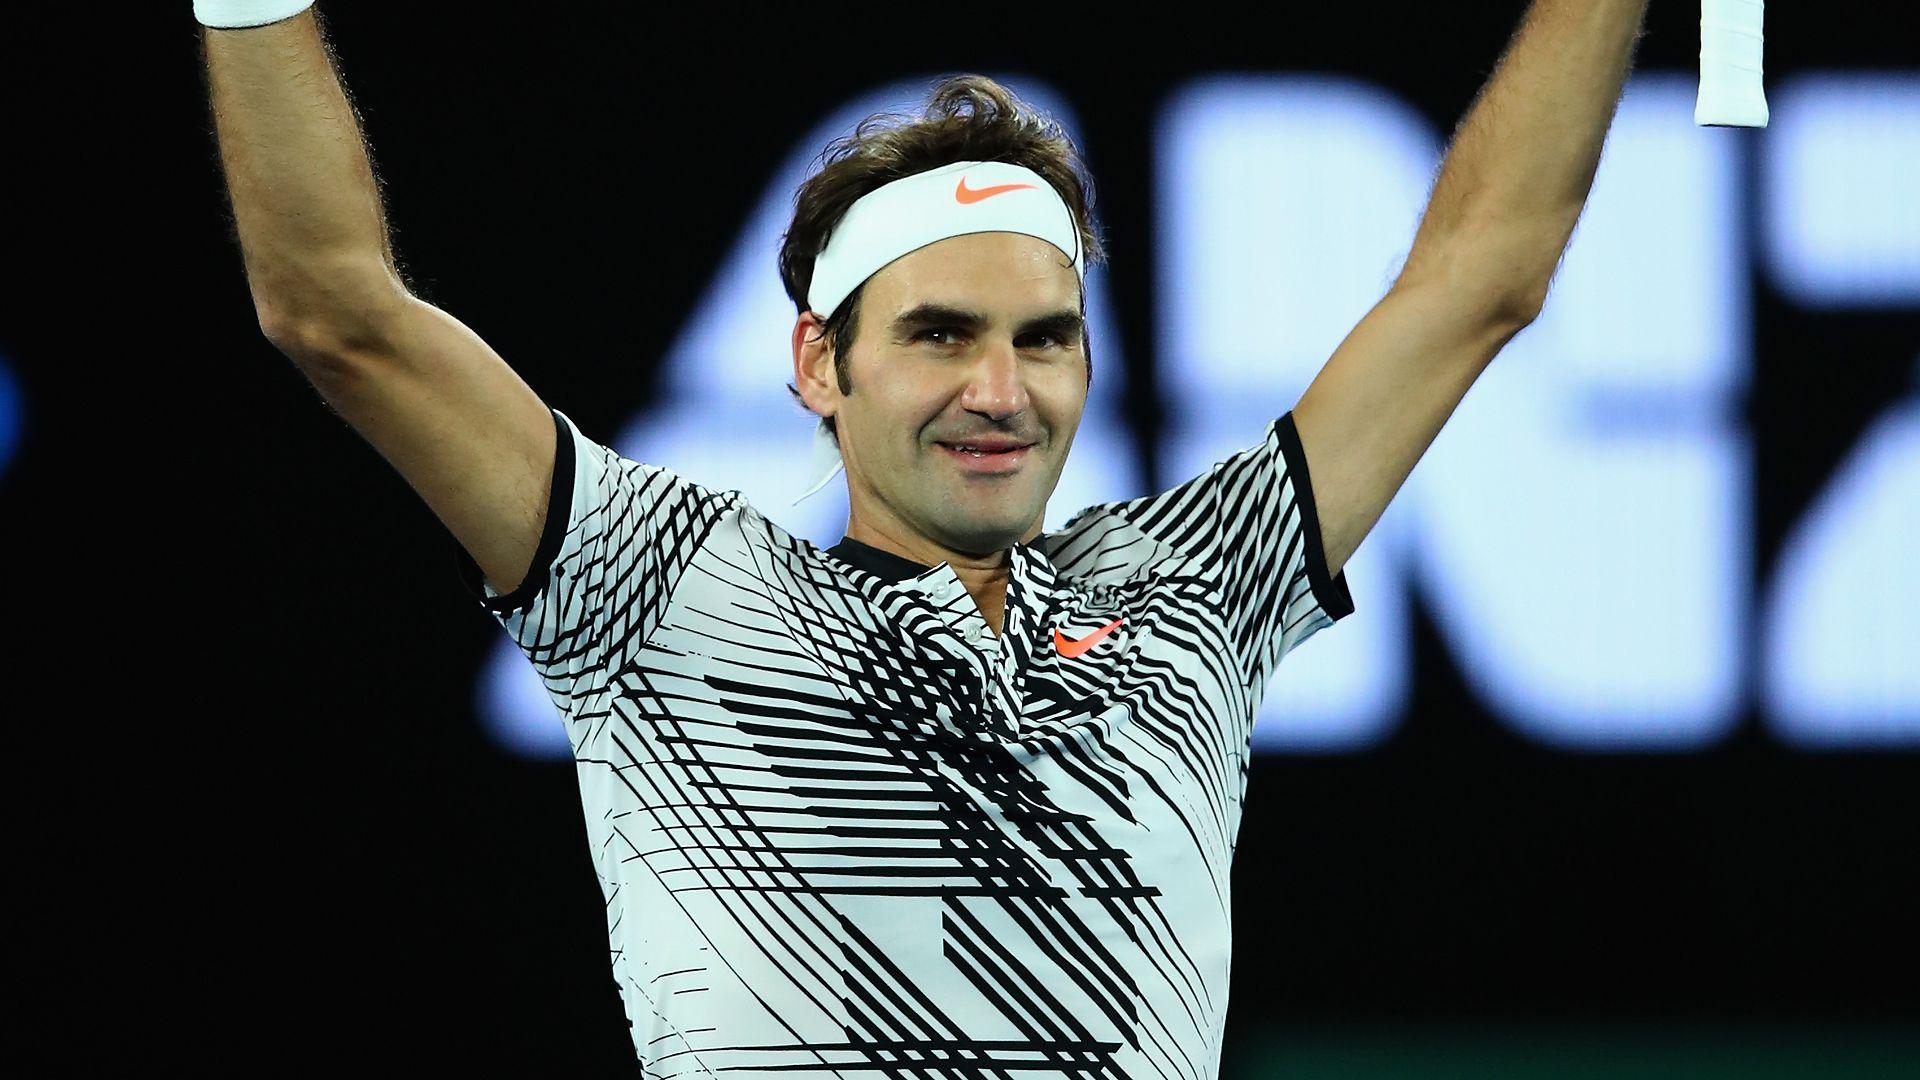 Federer To Meet Wawrinka After Ending Zverev's Run. ATP World